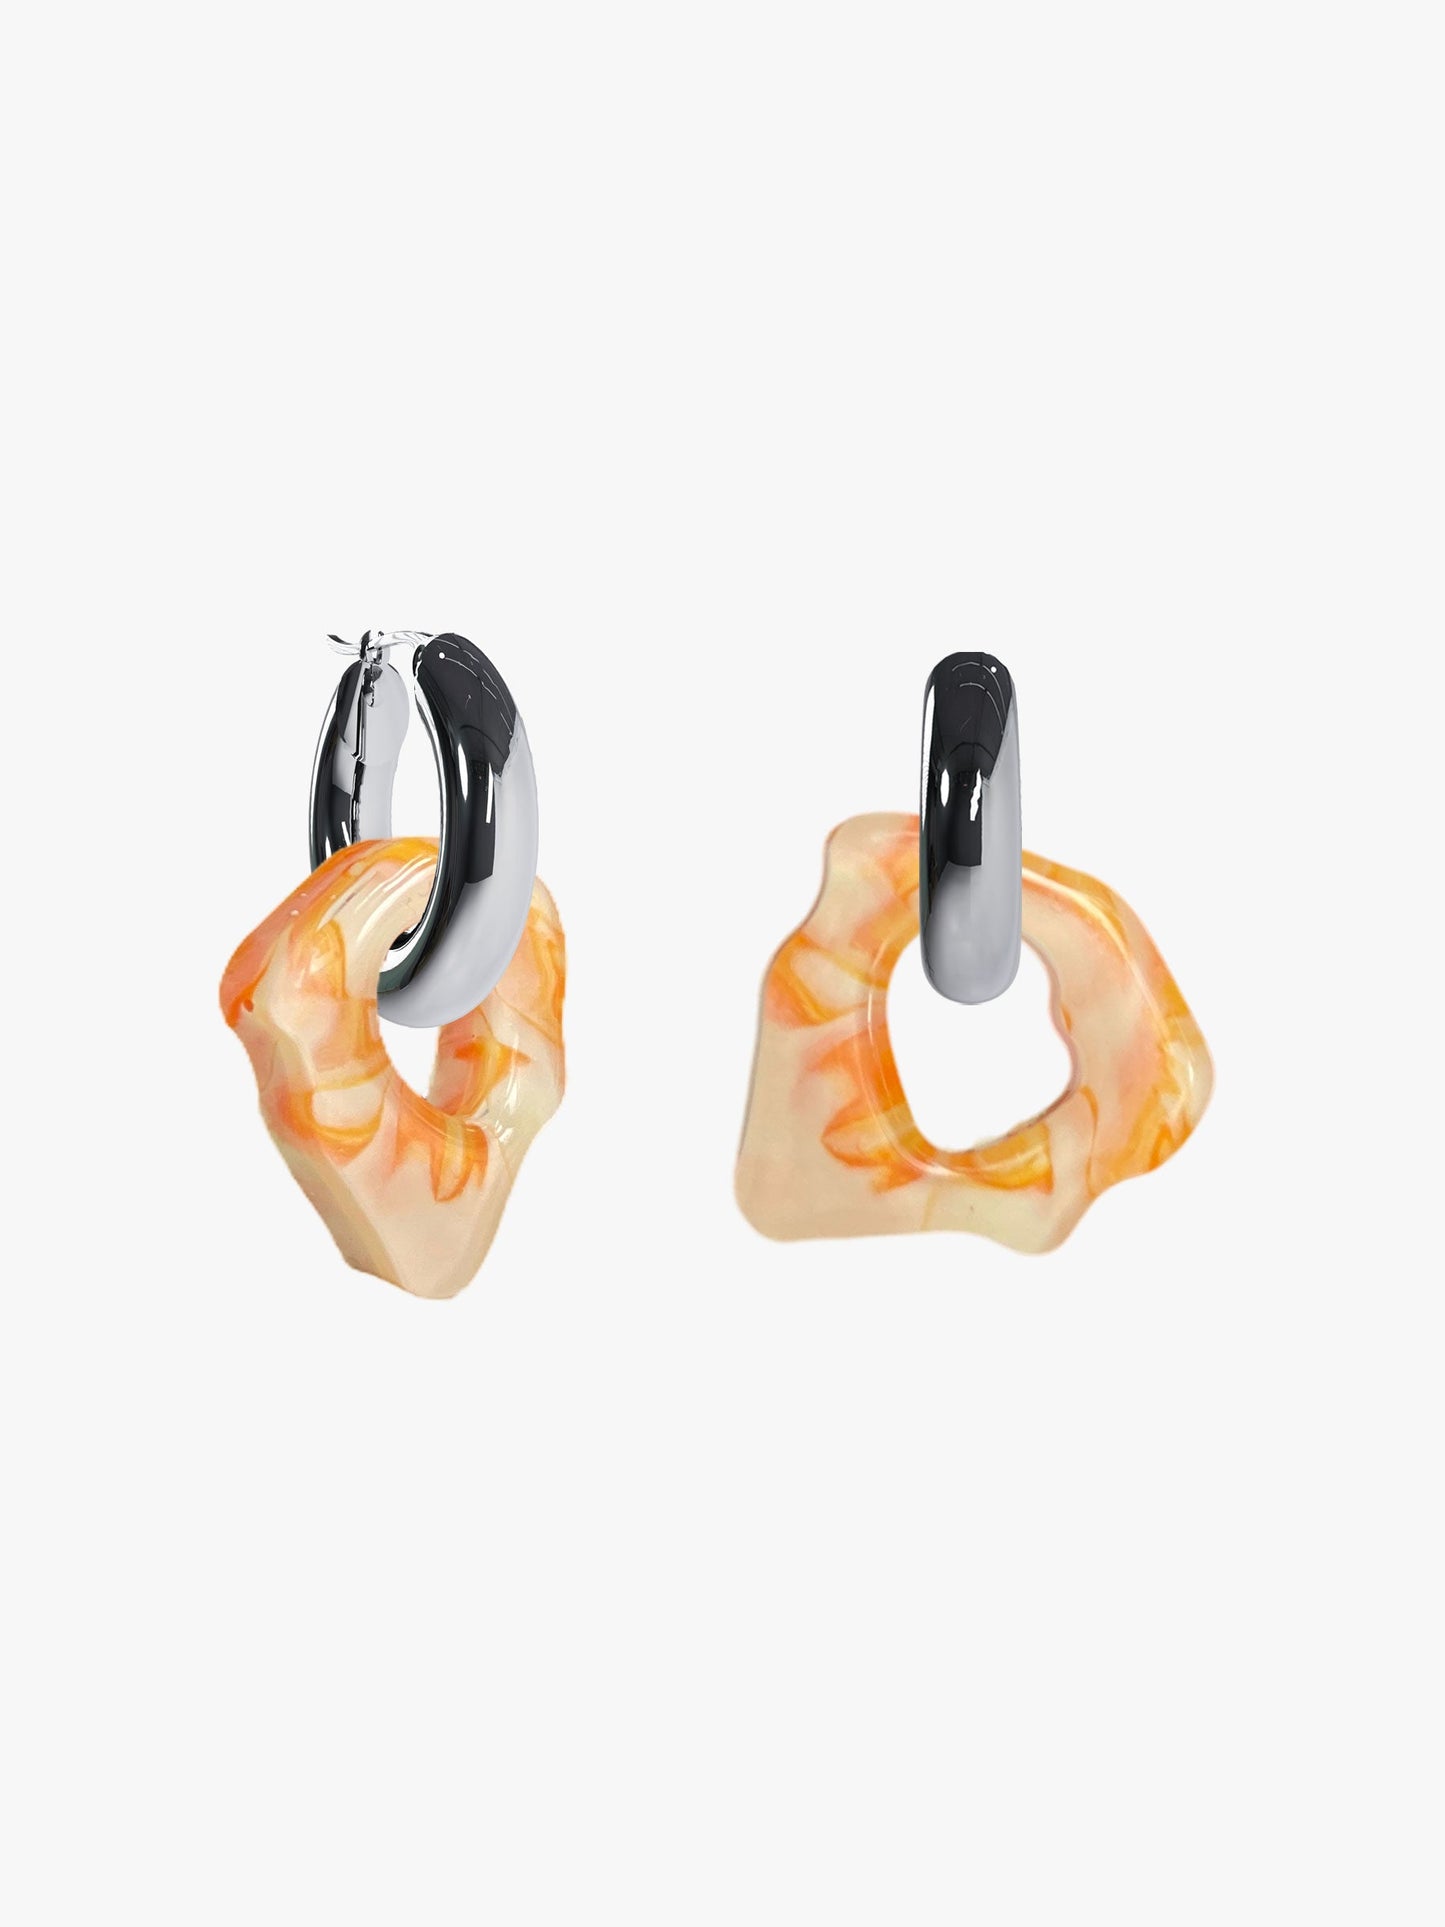 Ora marbled orange silver earring (pair)